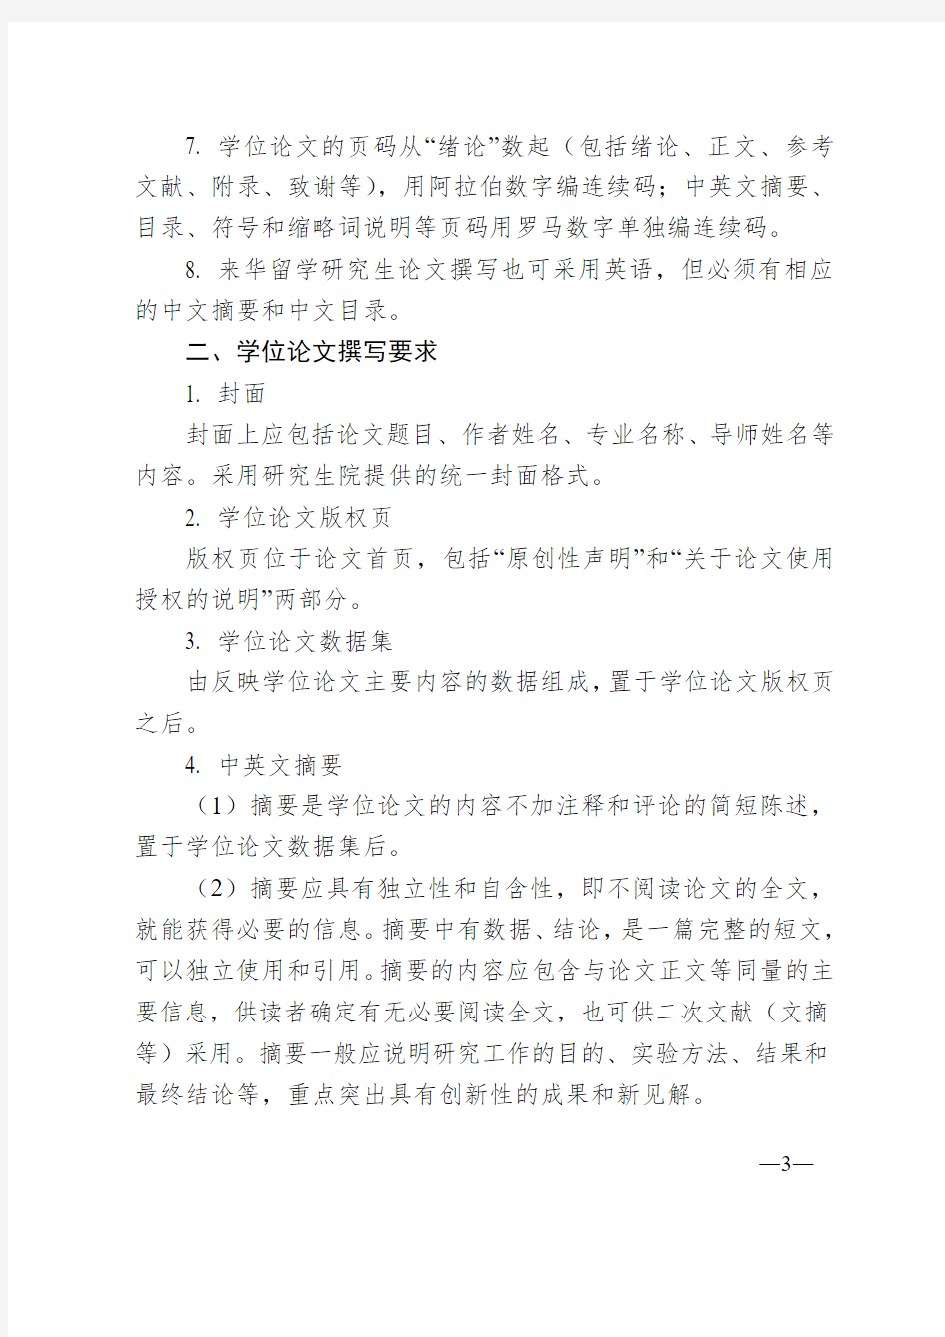 北京化工大学研究生学位论文撰写规范(修订)